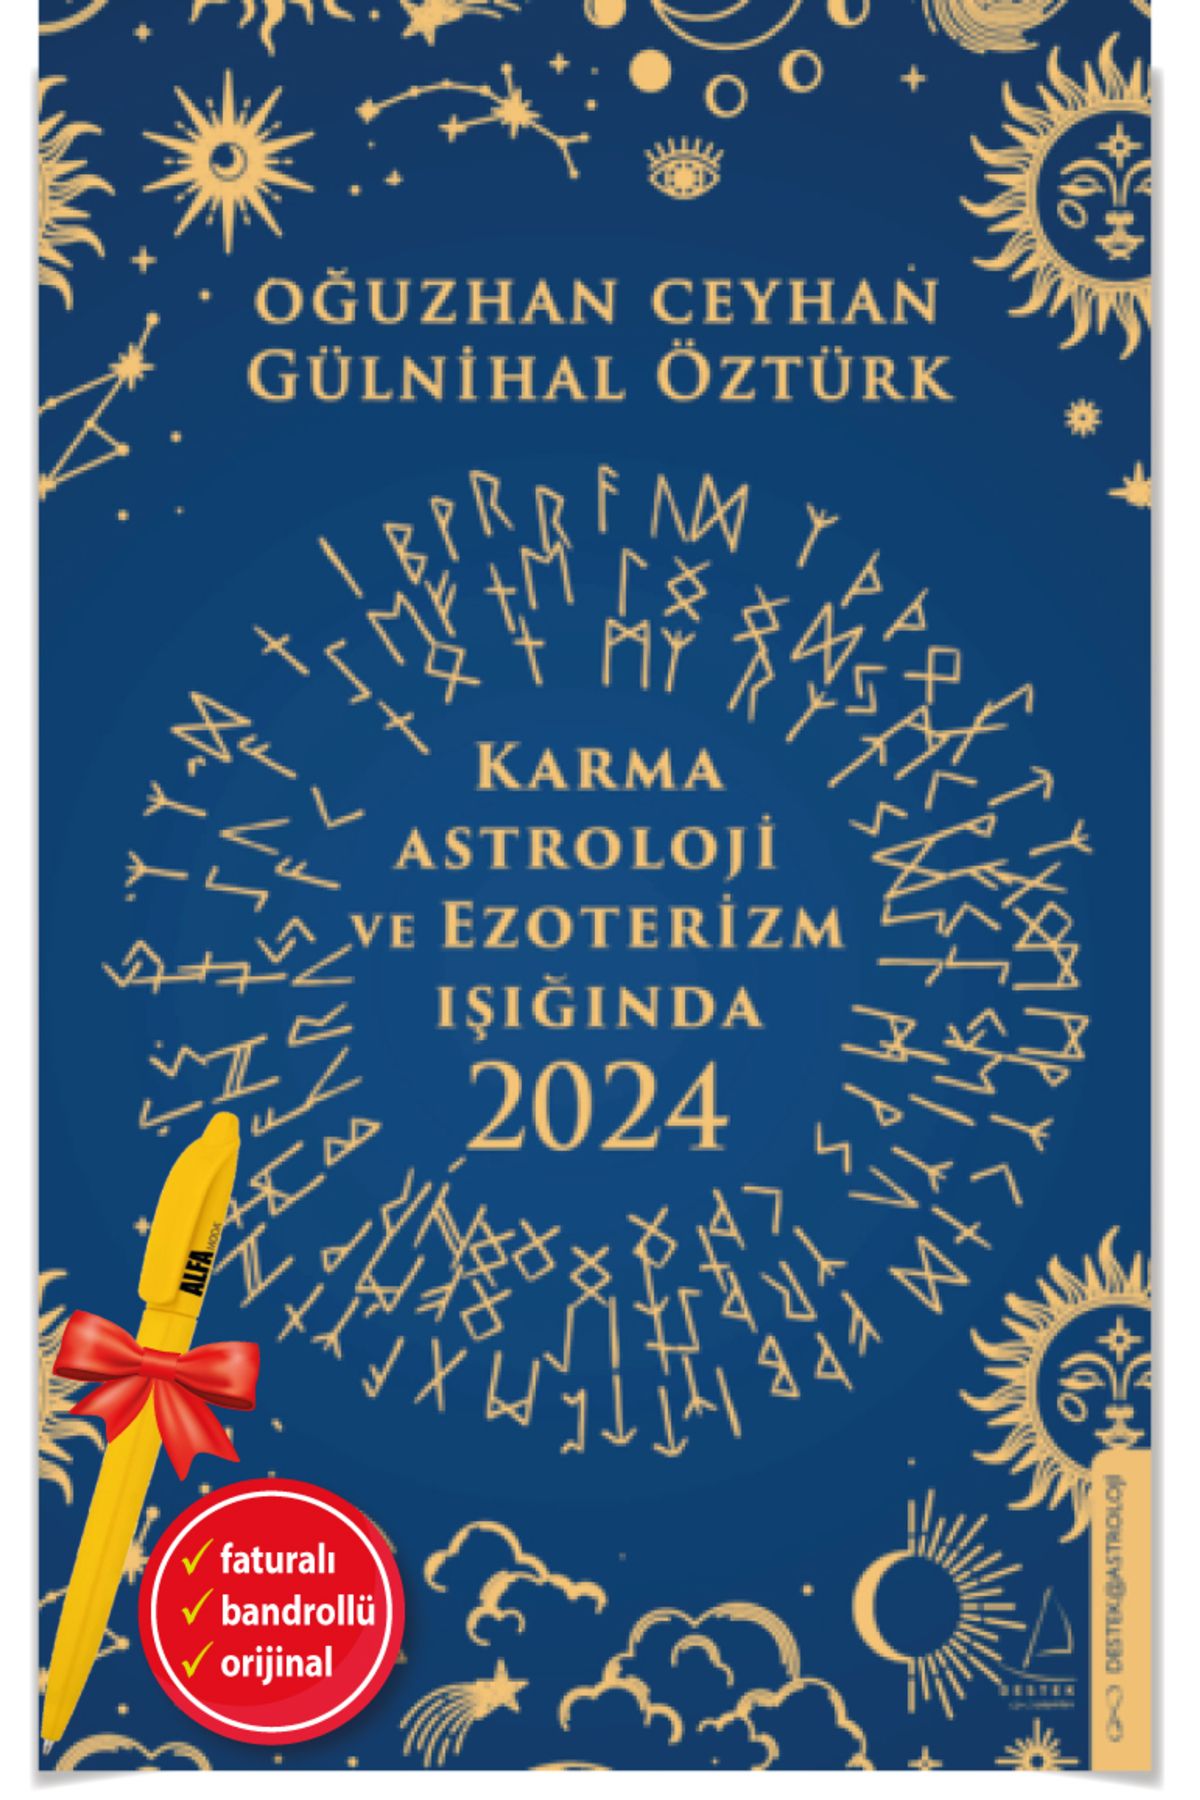 Destek Yayınları Alfa Kalem + Karma Astroloji ve Ezoterizm Işığında 2024 / Oğuzhan Ceyhan & Gülnihal Öztürk - Destek